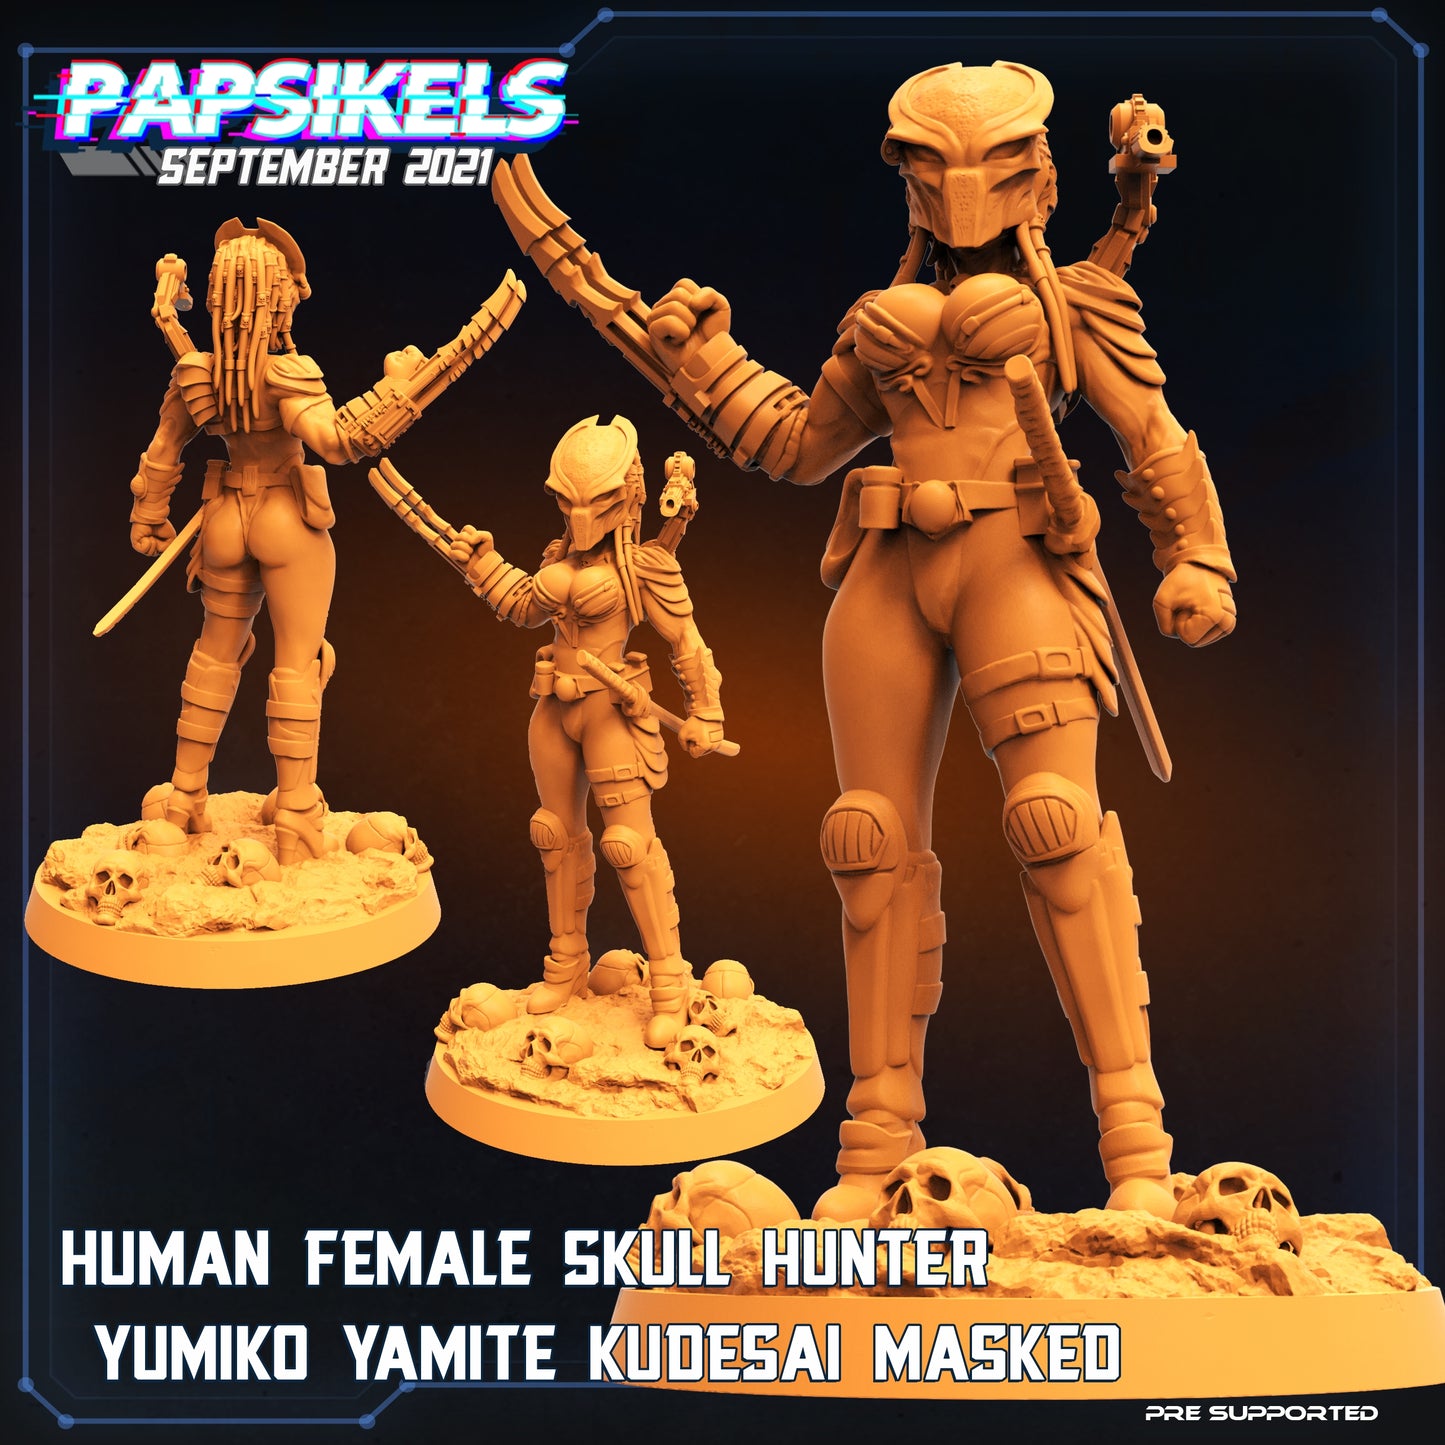 Human Female Skull Hunter Yumiko Yamite Kudesai (3 variantes)